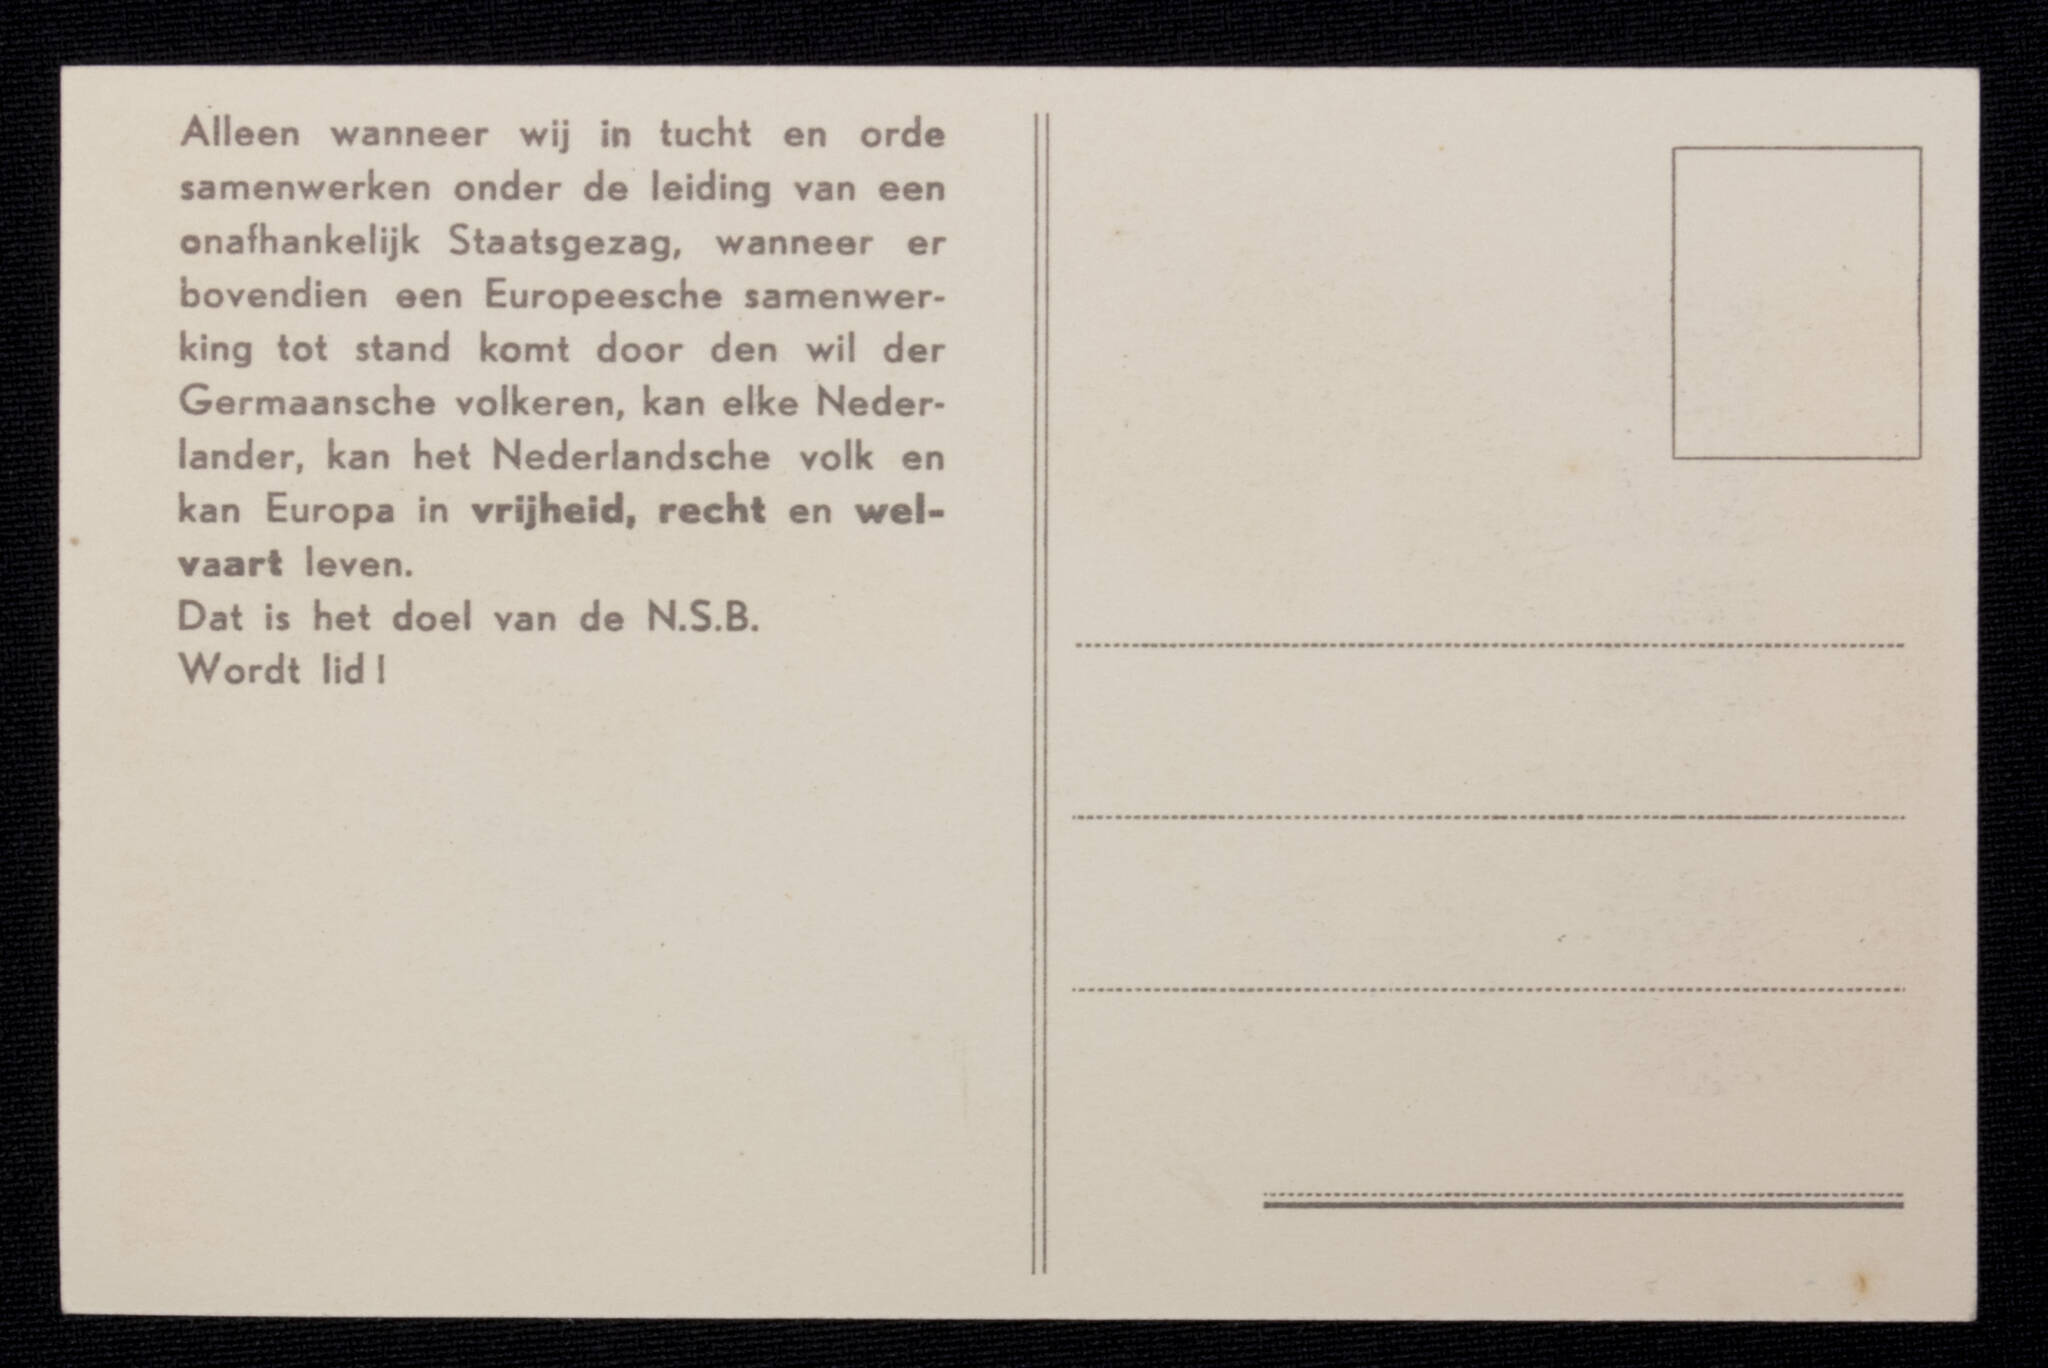 (Postcard) NSB Vrijheid - Recht - Welvaart